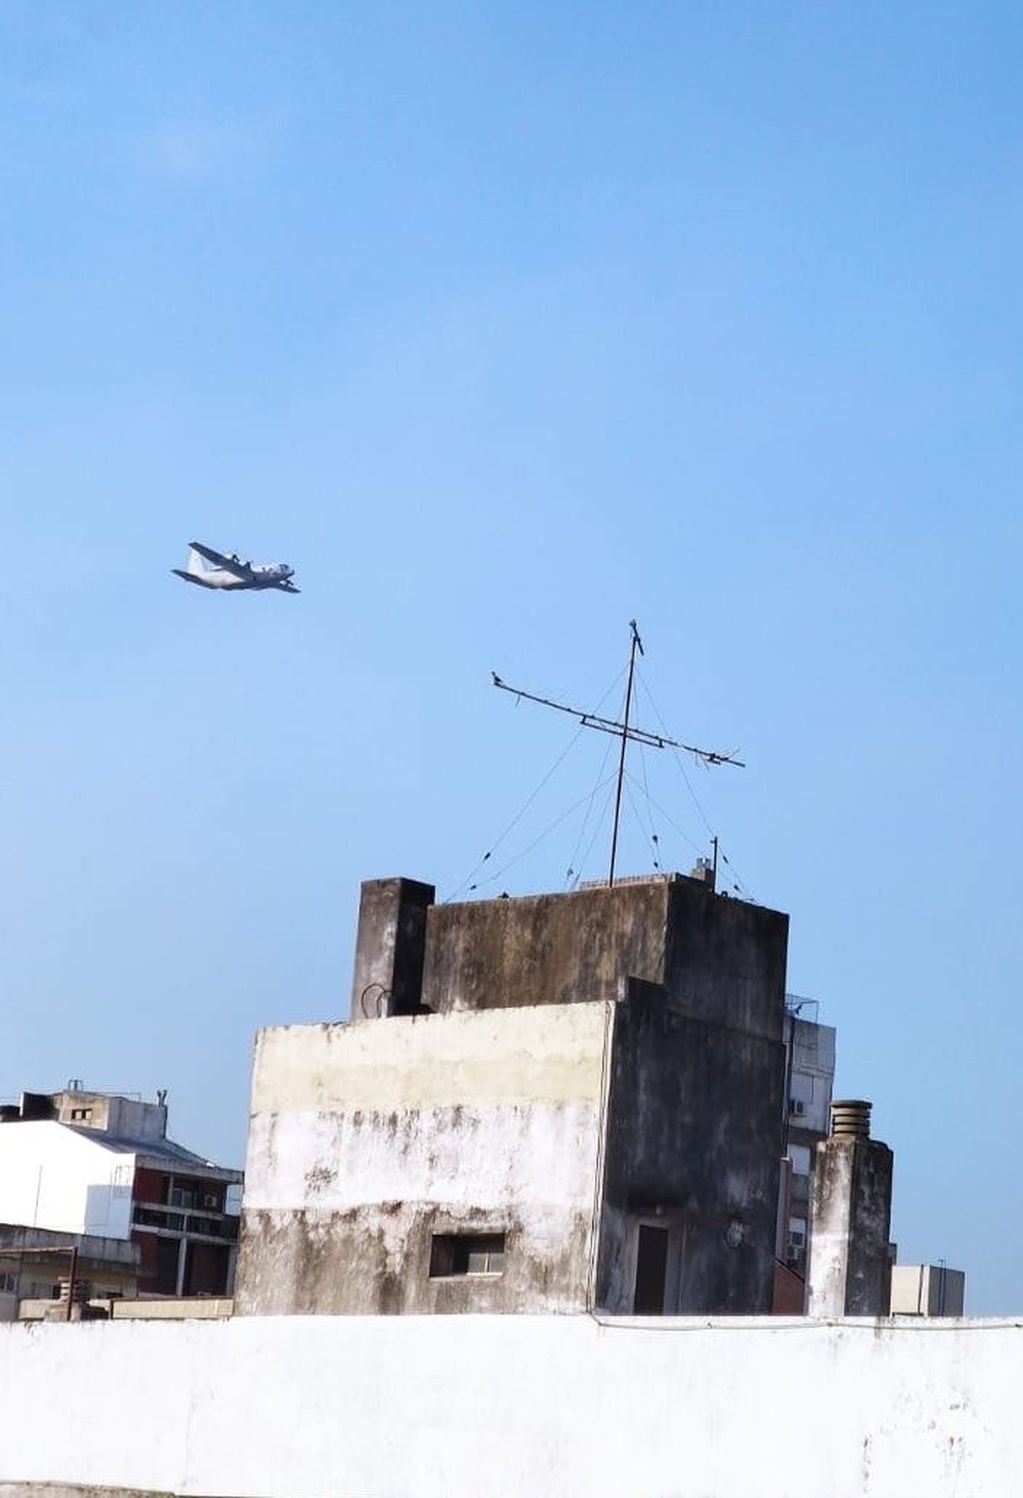 Ensordecedor ruido de aviones que sobrevolaron Rosario a muy baja altura